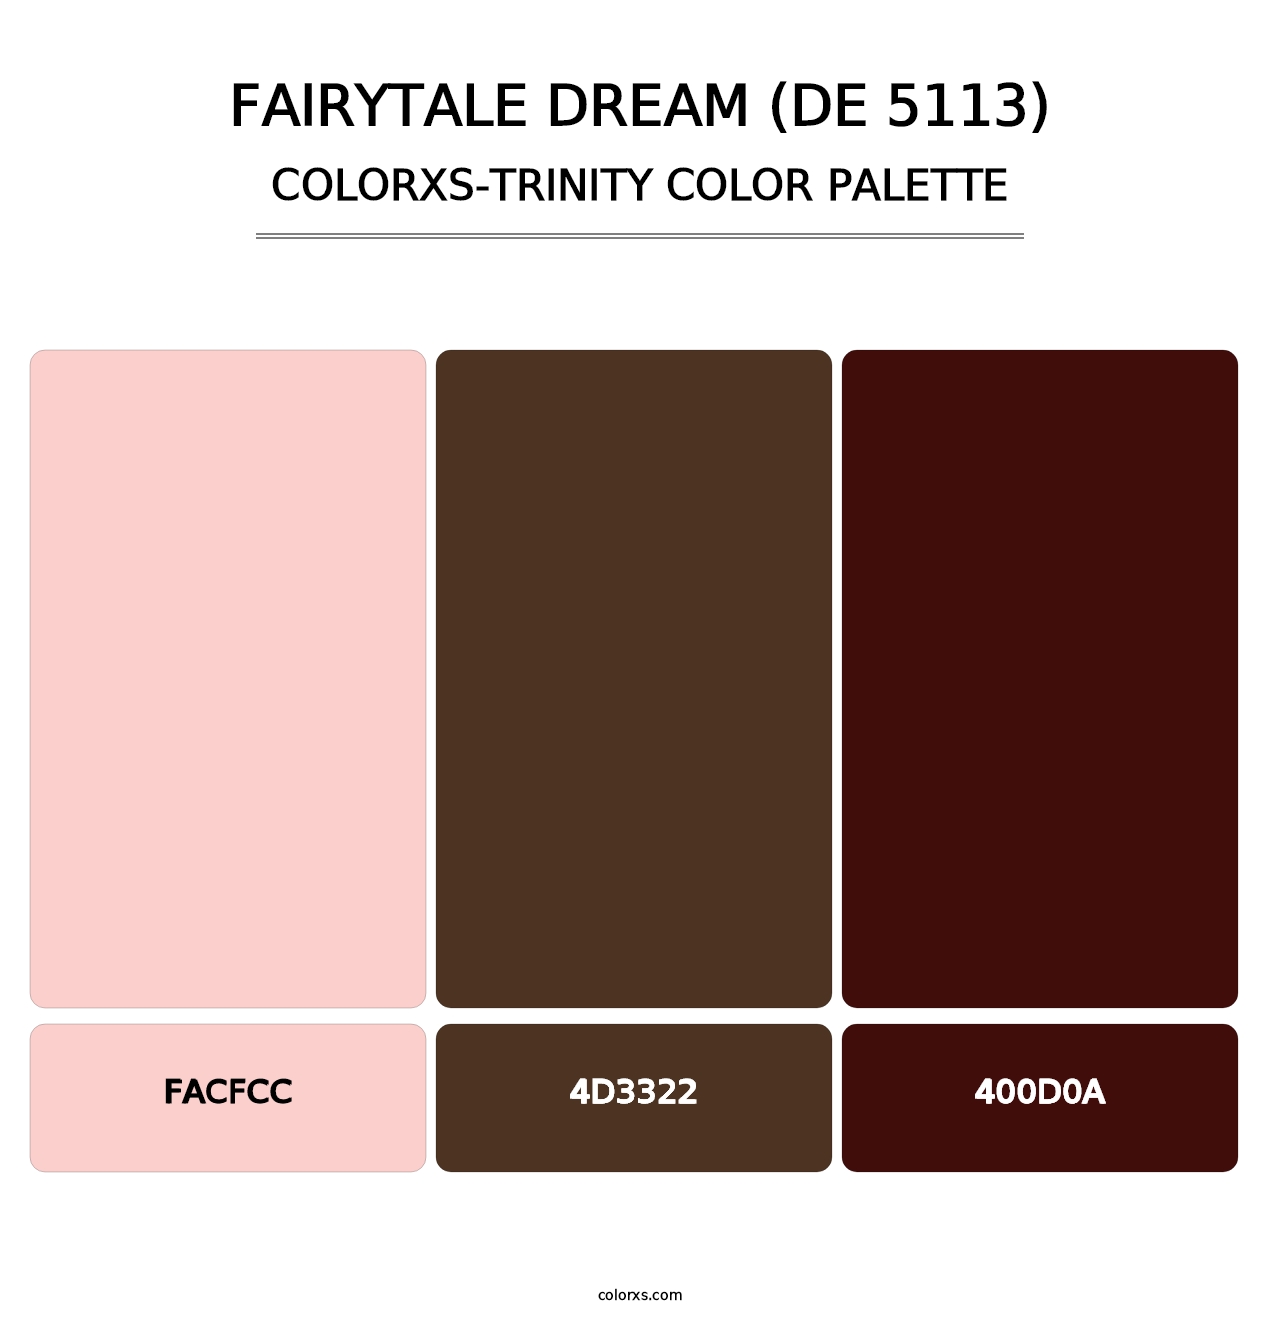 Fairytale Dream (DE 5113) - Colorxs Trinity Palette